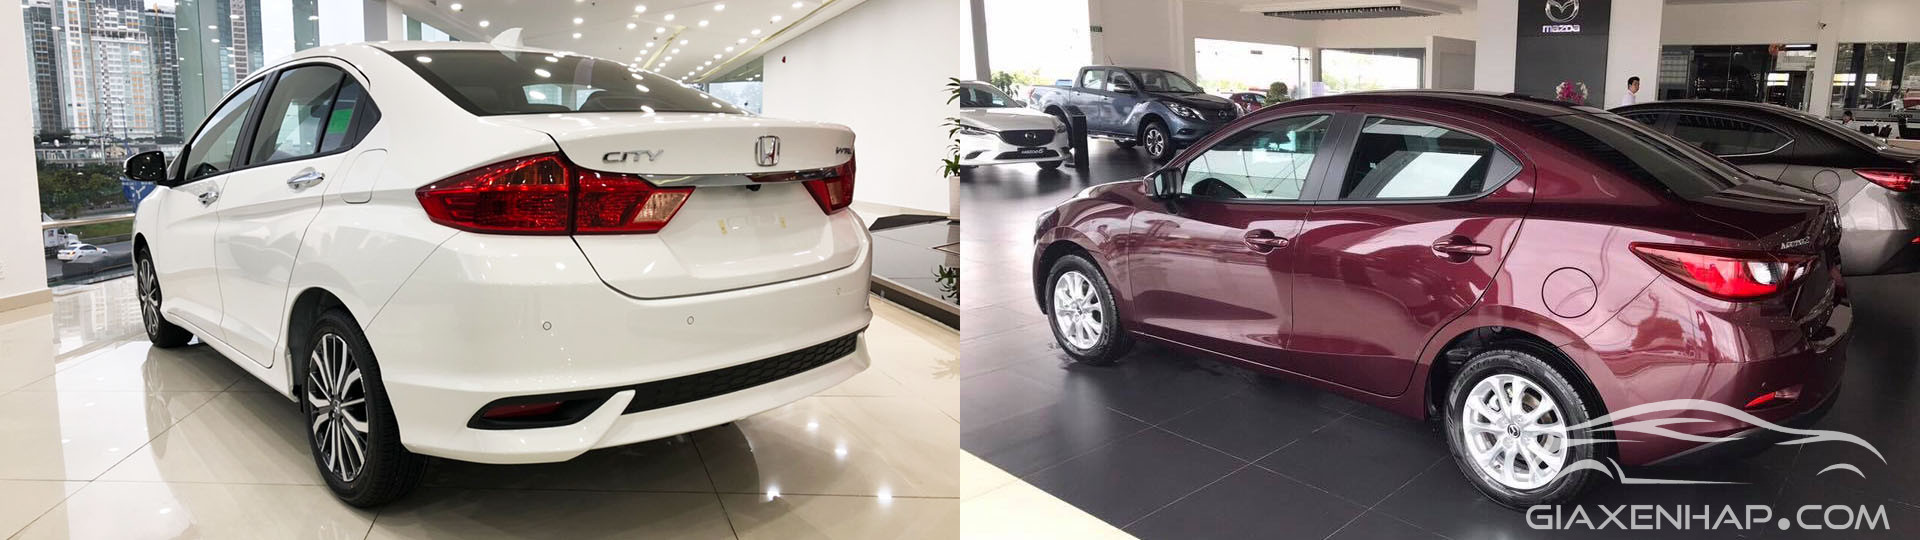 So sánh Honda City 2019 và Mazda 2